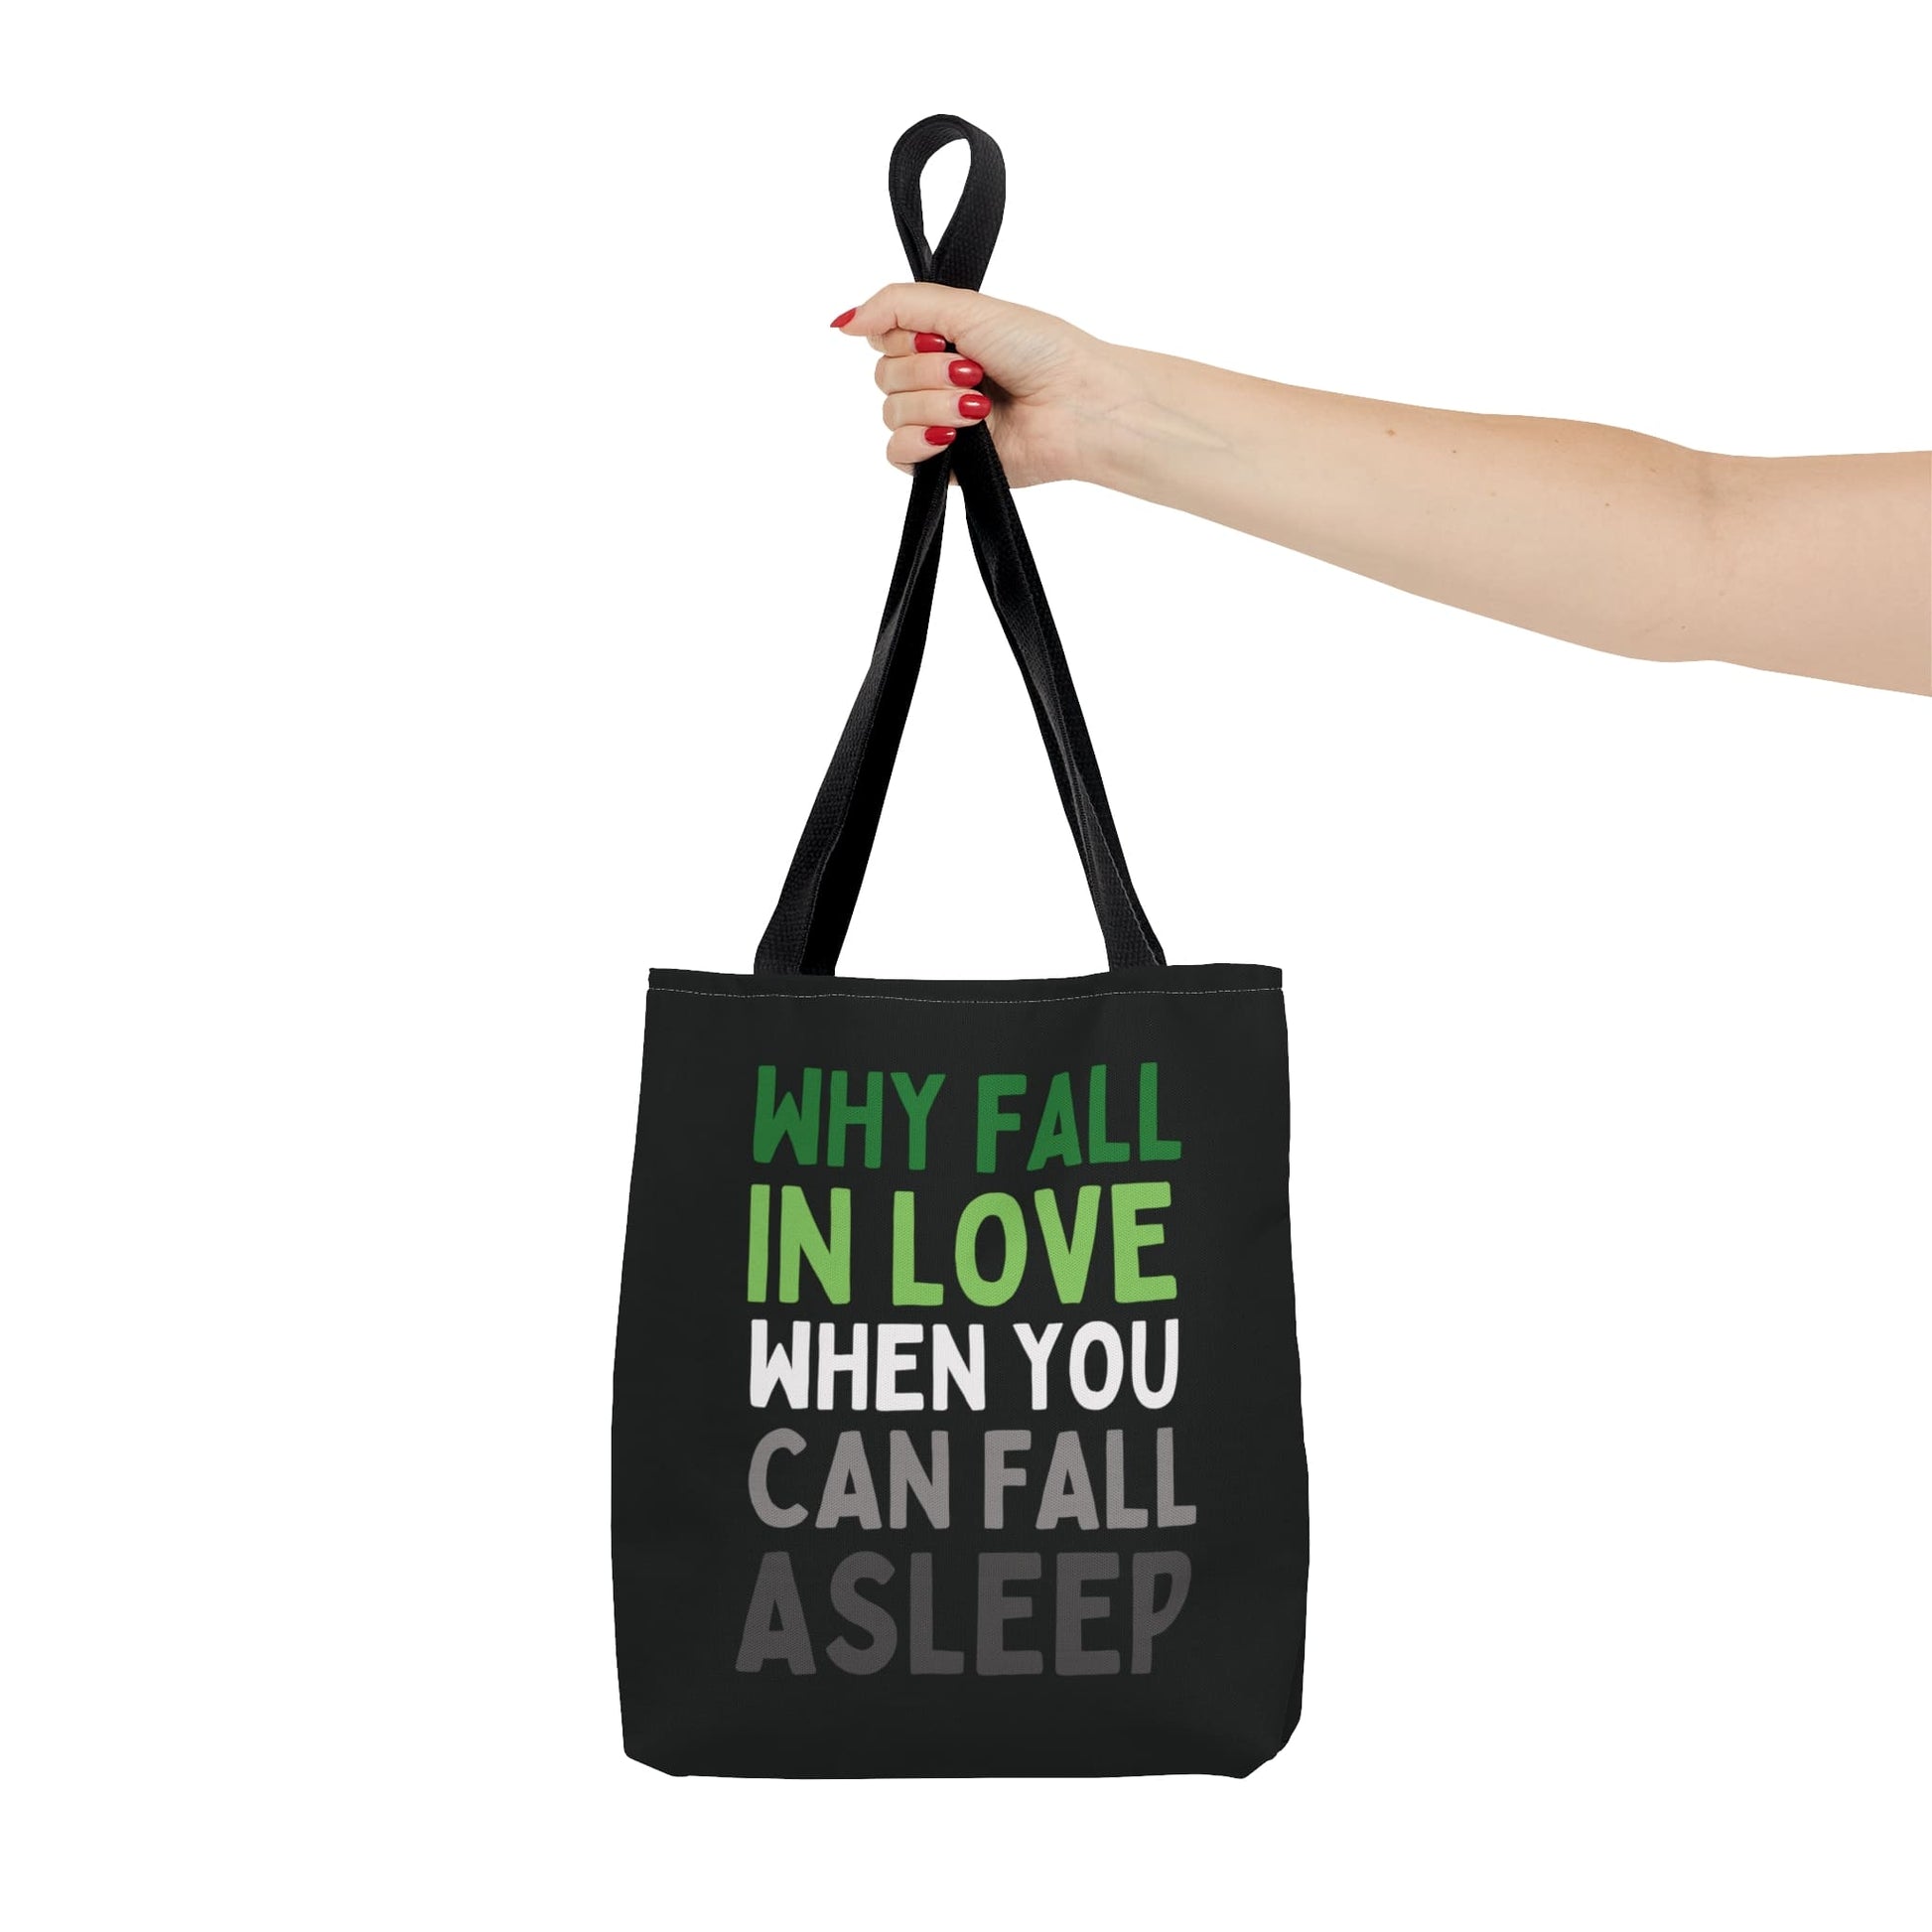 aromantic tote bag, funny aro pride bag, small